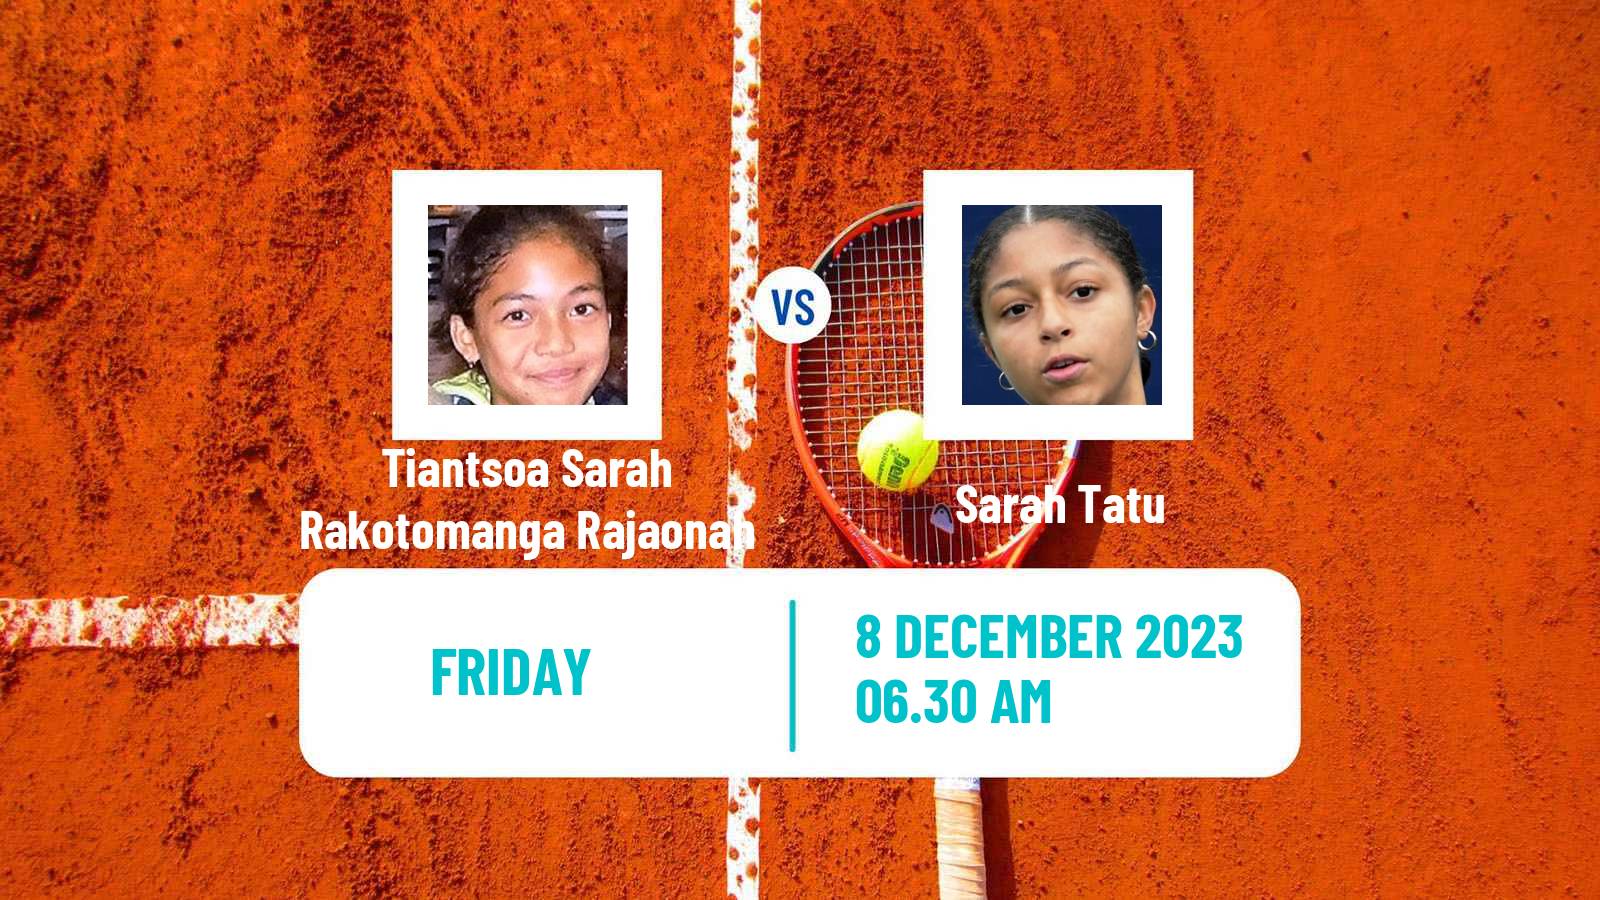 Tennis ITF W15 Valencia 2 Women Tiantsoa Sarah Rakotomanga Rajaonah - Sarah Tatu